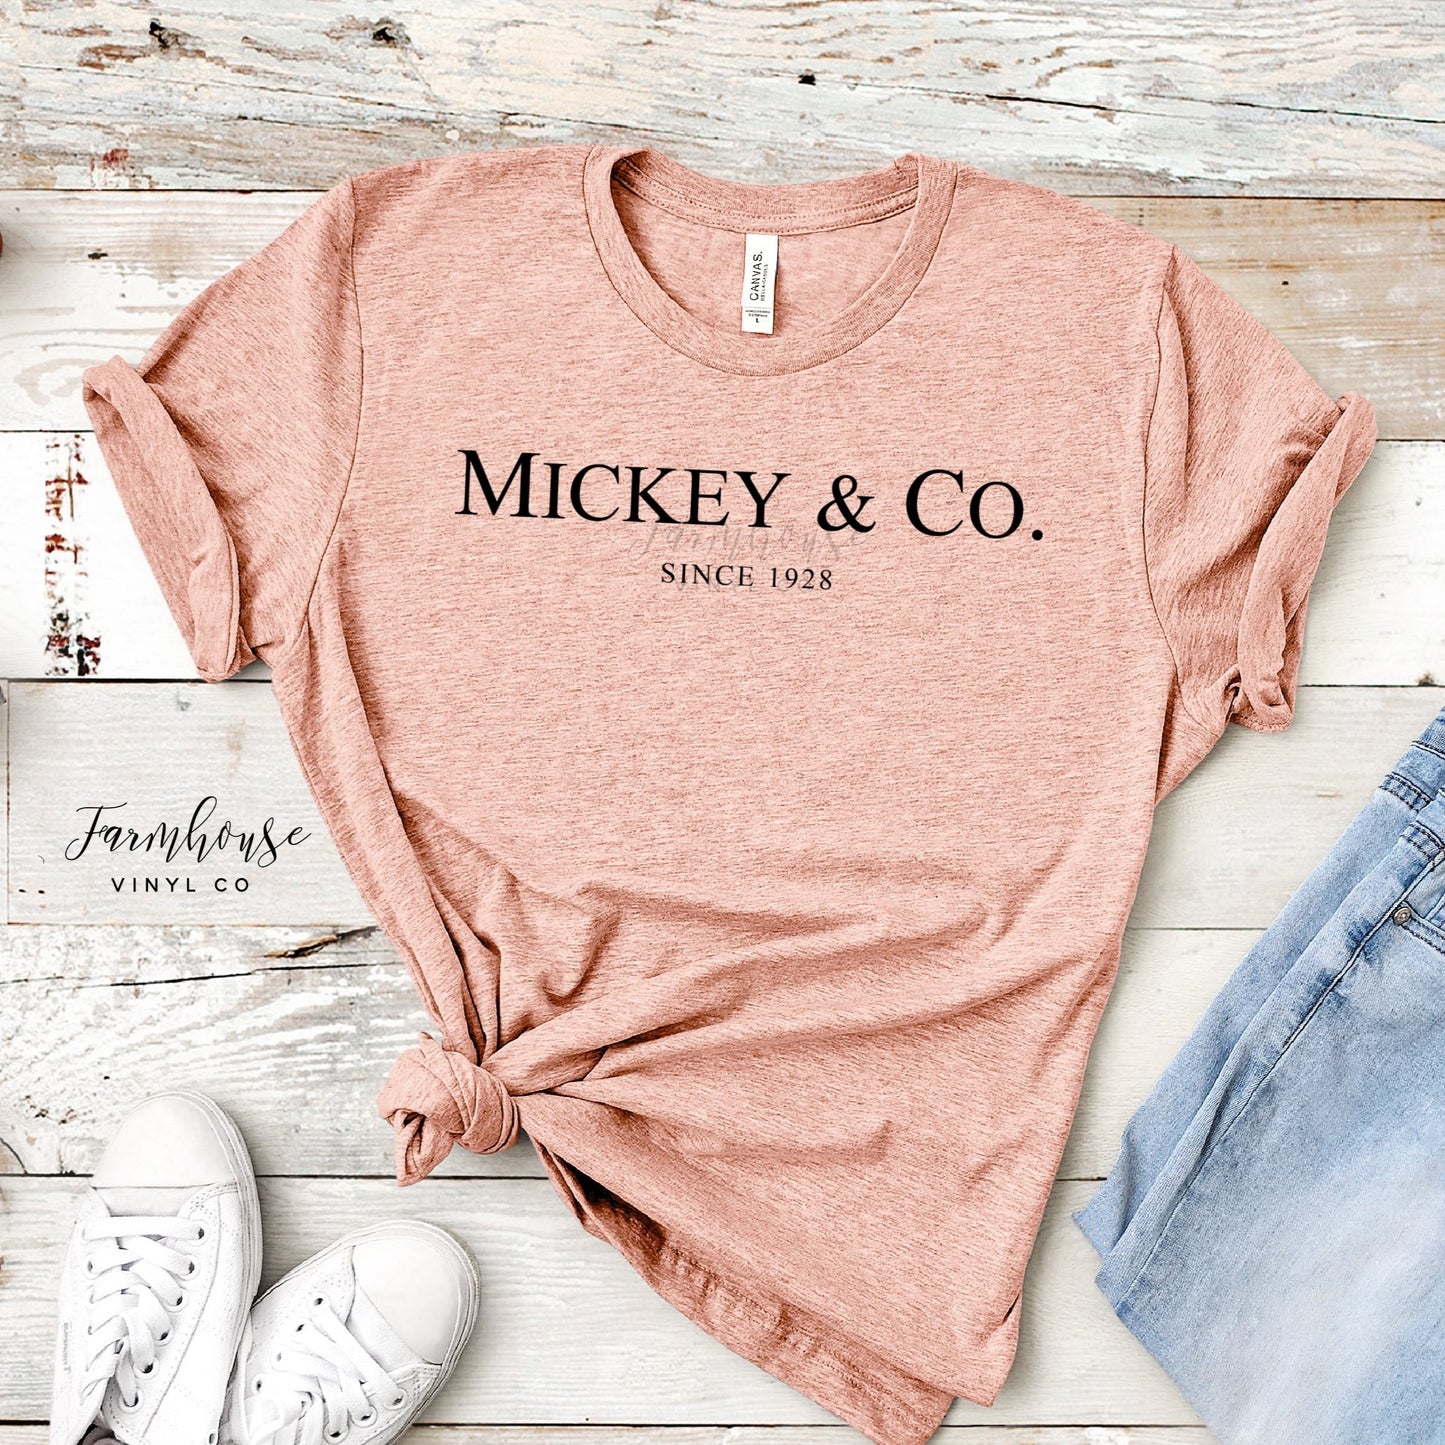 Mickey & Co. Est. 1928 Shirt Collection - Farmhouse Vinyl Co